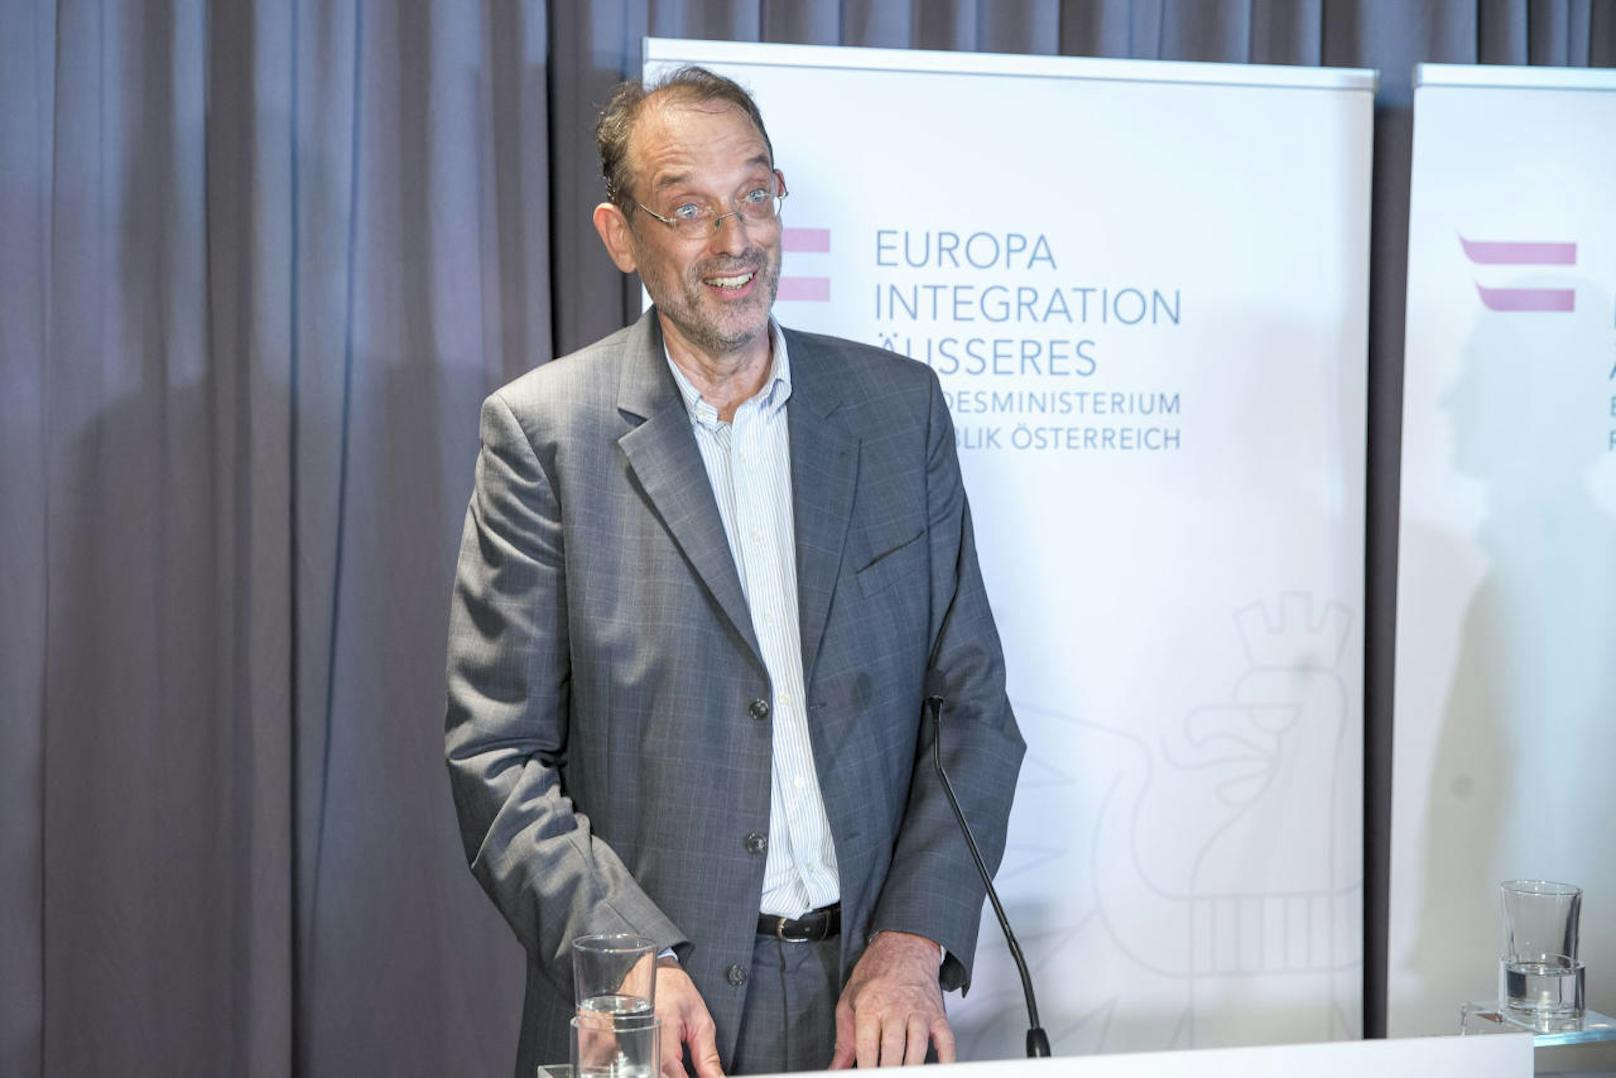 Heinz Faßmann, Vorsitzendes des Expertenrats für Integration, präsentiert den Integrationsbericht 2015